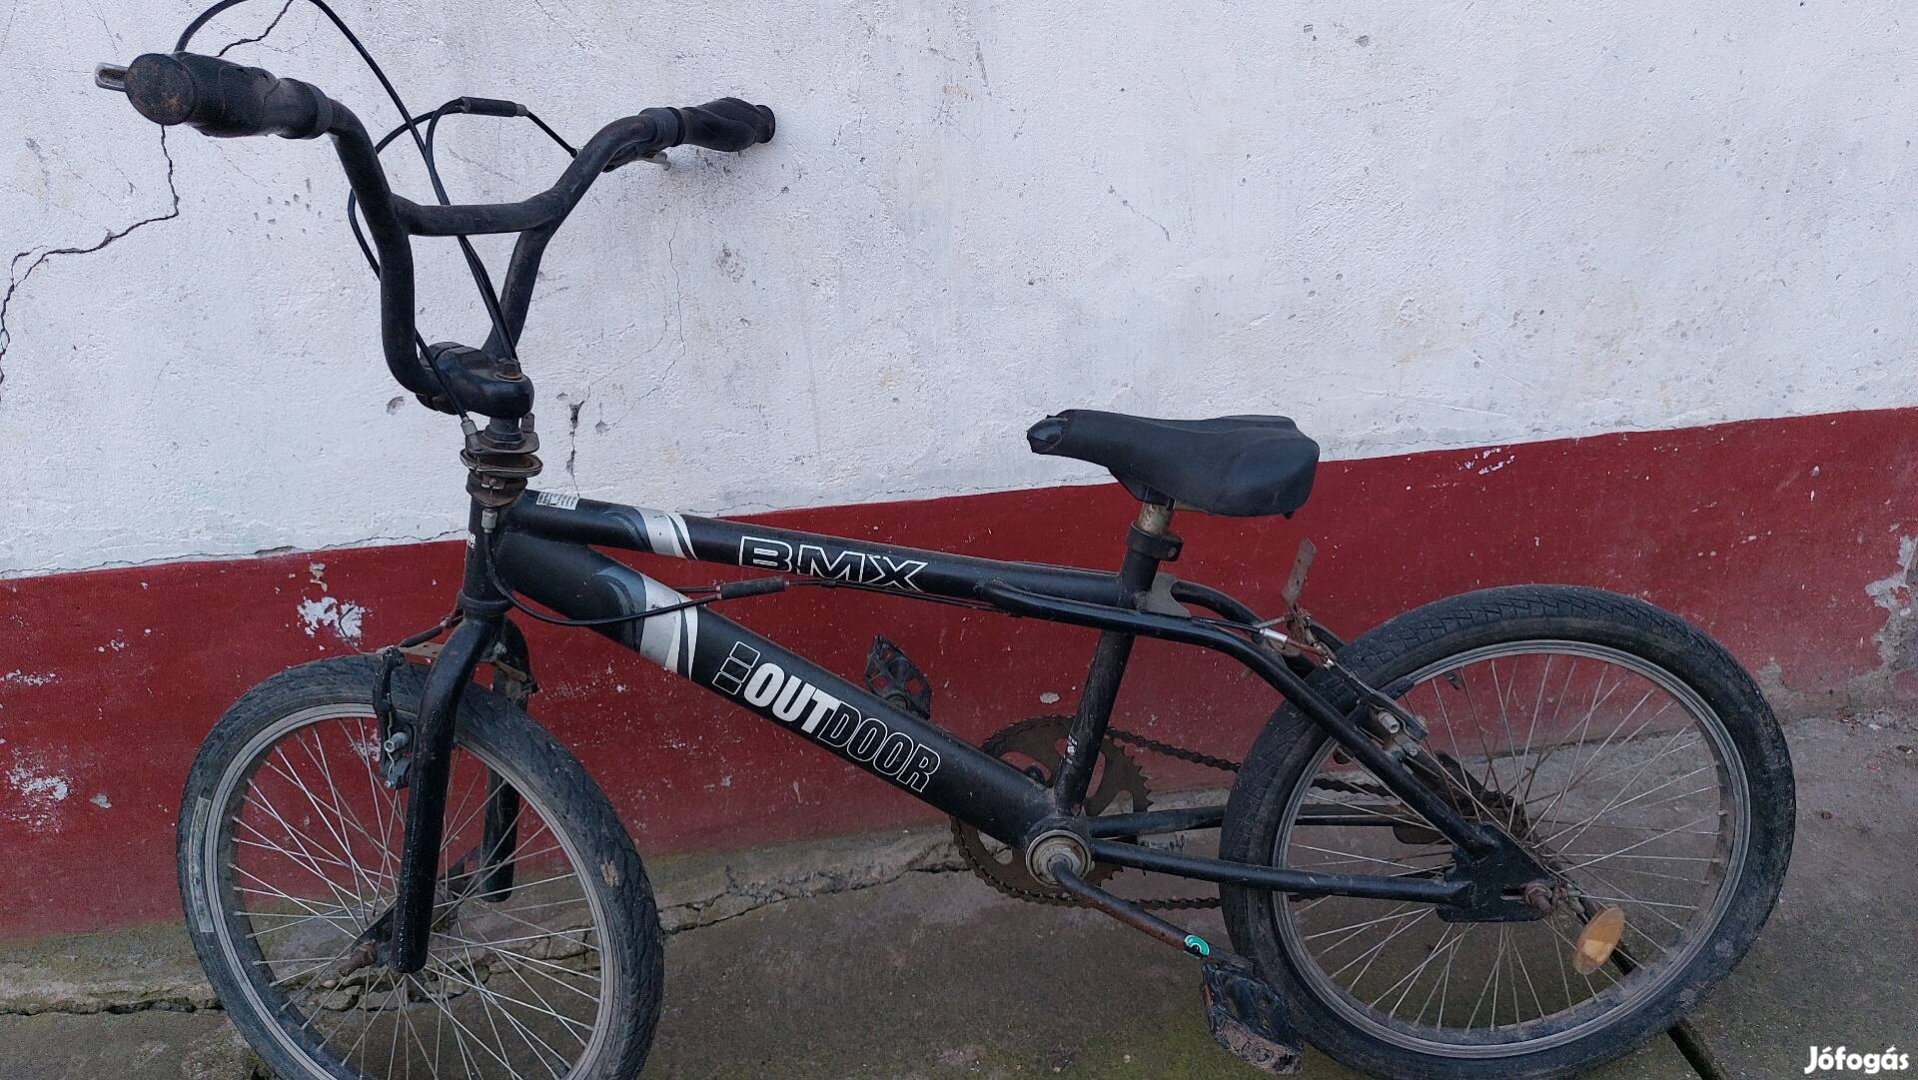 Eladó egy fiú Bmx 20 as méretű kerékpár.